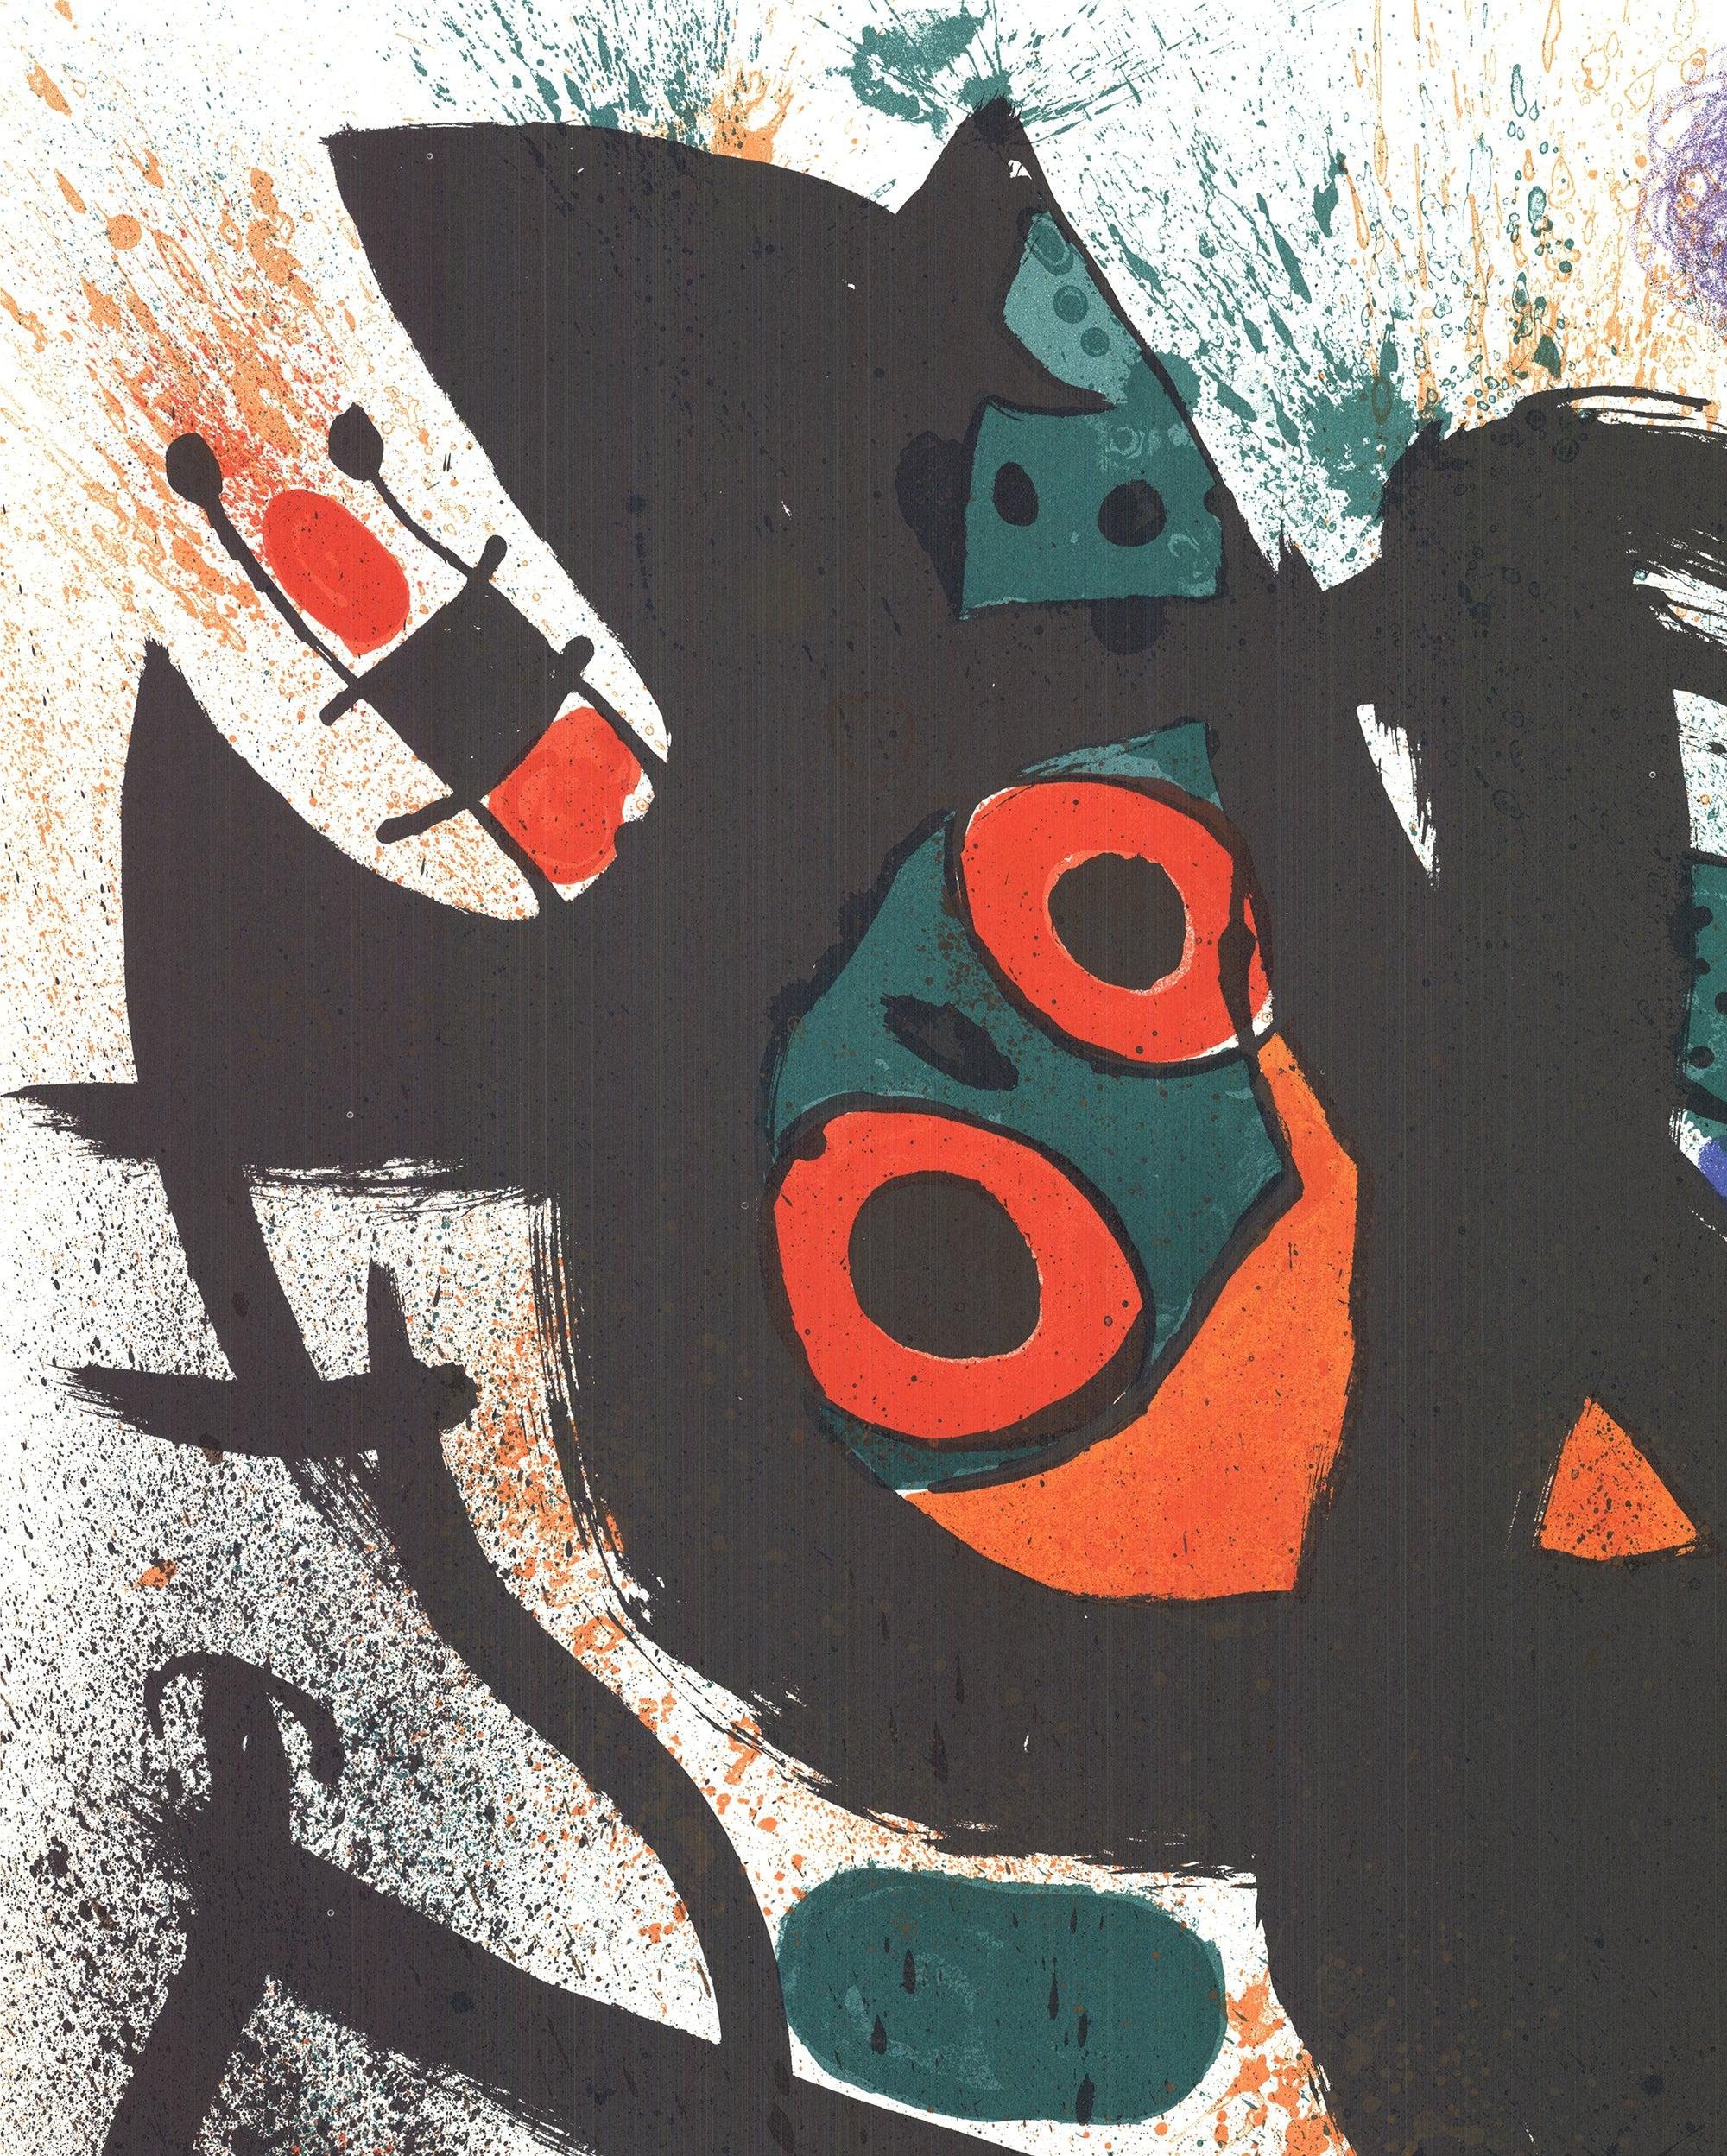 Artiste : Joan Miro
Titre : Exposition du Pasadena Art Museum
Année : 1969
Signé : Non
Médium : Lithographie
Taille du papier : 31.5 x 22.5 pouces (80.01 x 57.15 cm)
Taille de l'image : 24.5 x 19 pouces ( 62.23 x 48.26 cm )
Taille de l'édition :